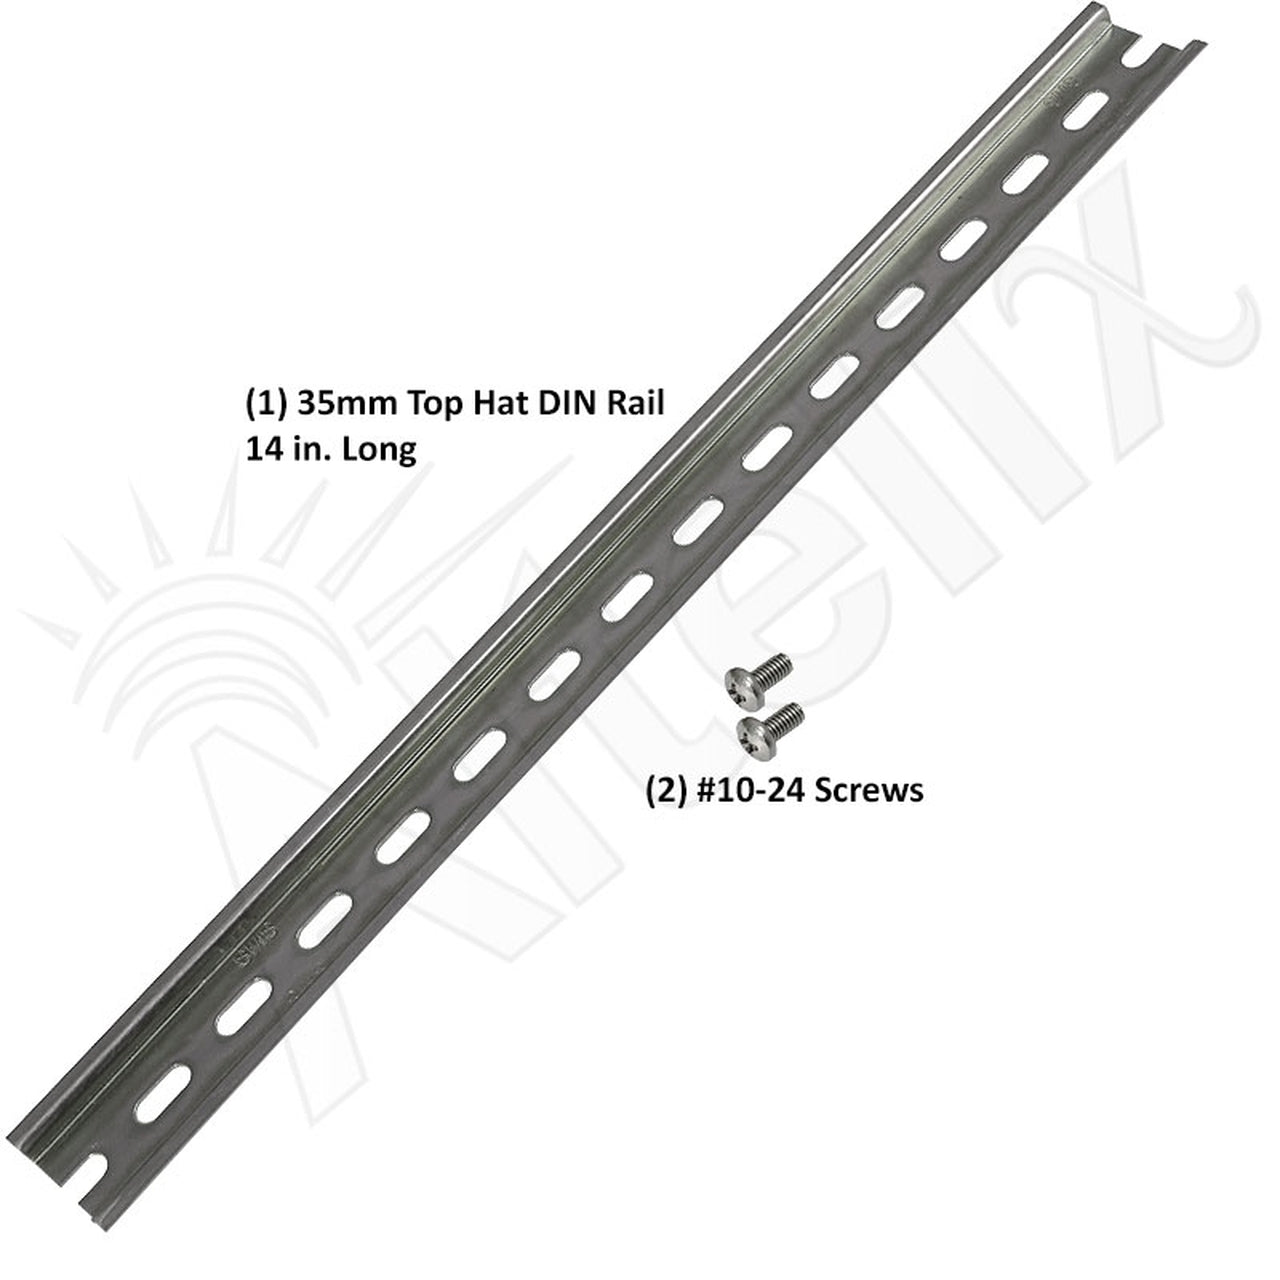 35mm Top Hat DIN Rail Kit for NS161608-DIN, NS201608-DIN & NS241610-DIN Enclosures